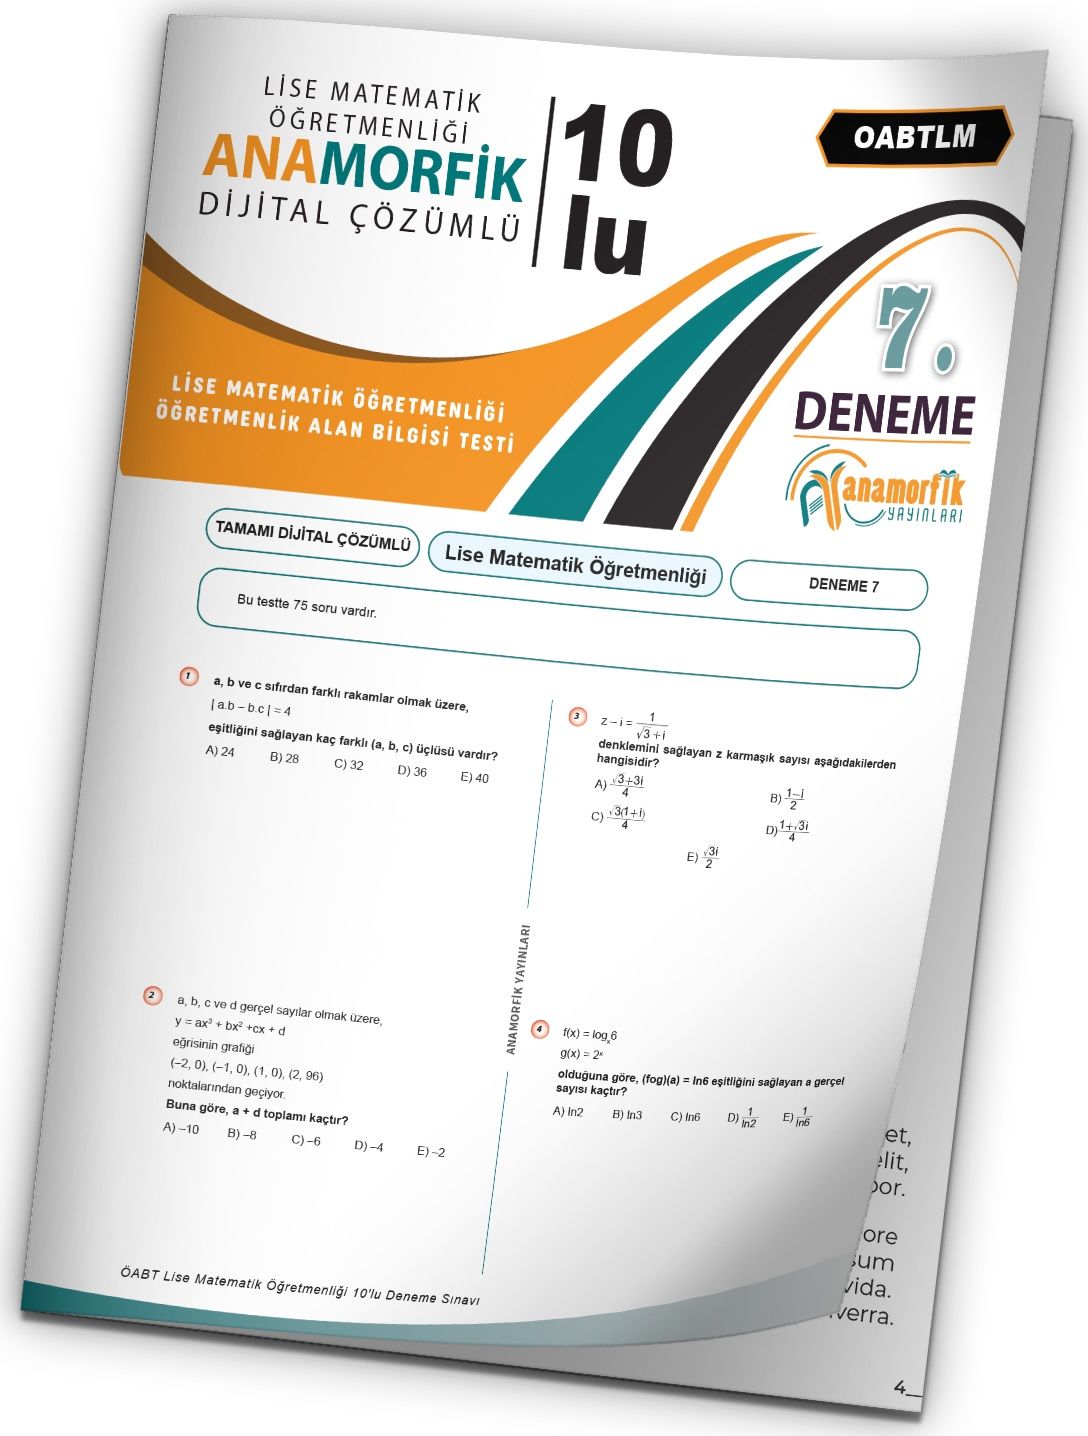 Anamorfik 2023 ÖABT Lise Matematik Öğretmenliği Türkiye Geneli Deneme 7. Kitapçık Dijital Çözümlü Anamorfik Yayınları